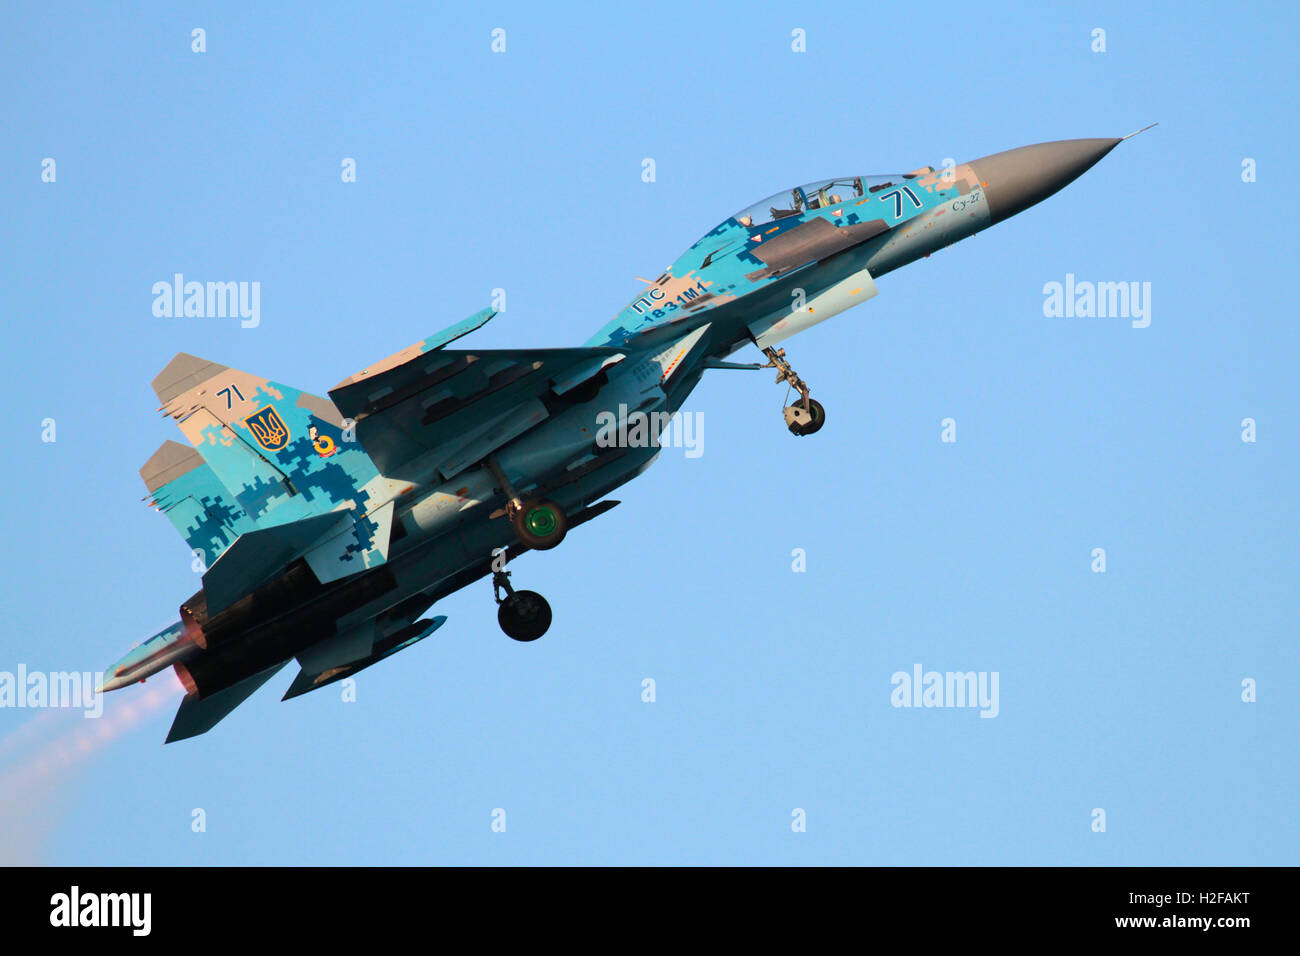 Ukraine Air Force Suchoi Su-27 UB Flanker Jet Fighter Aircraft in einem Air Display fliegen Stockfoto